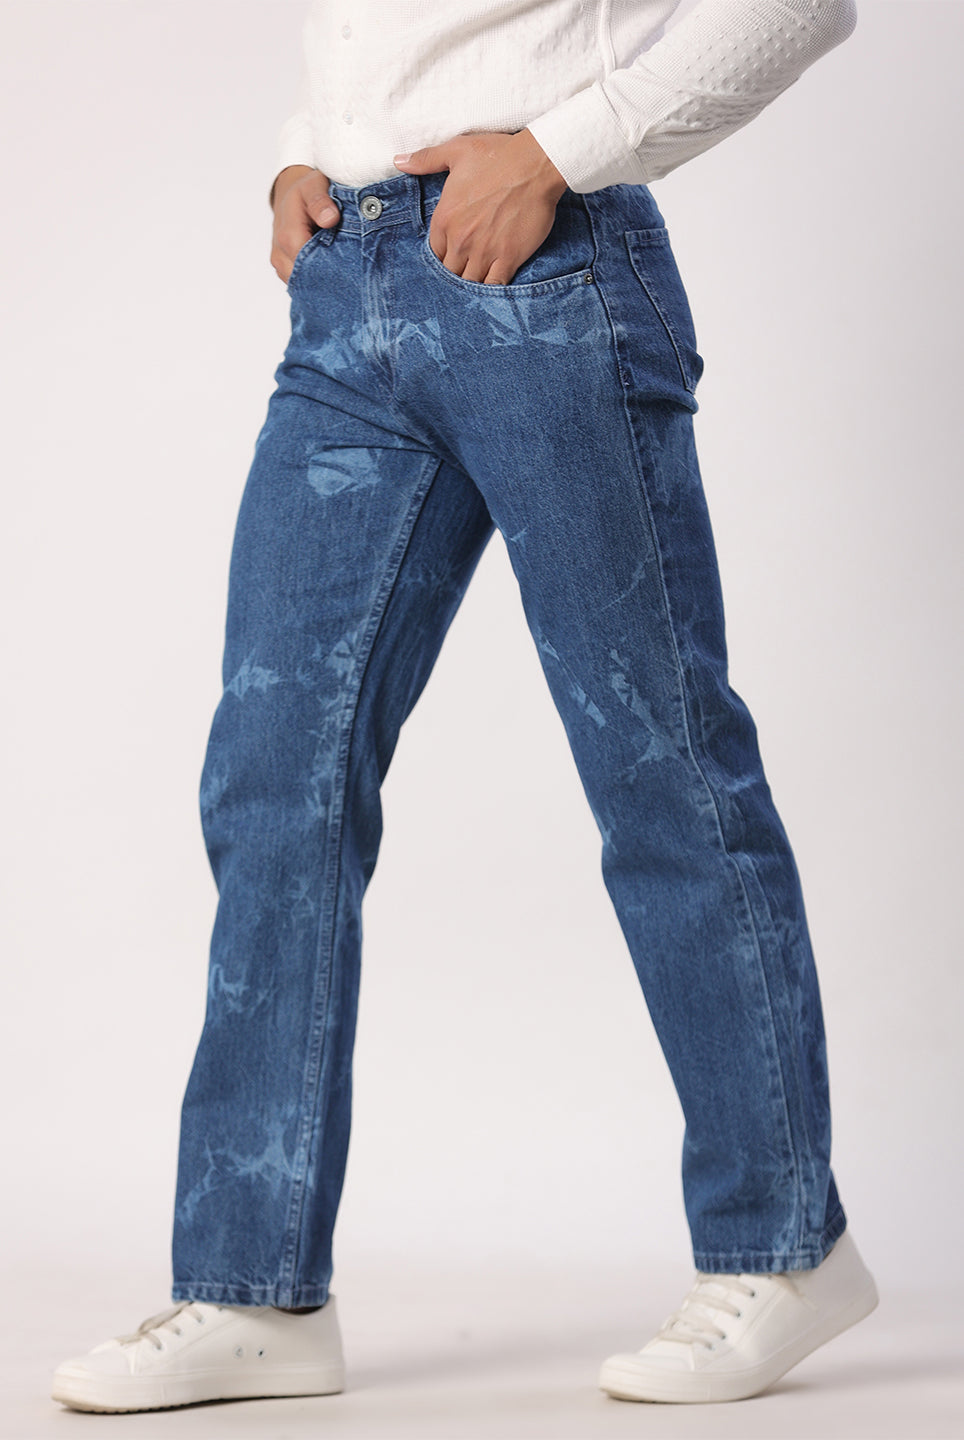 denim jeans images